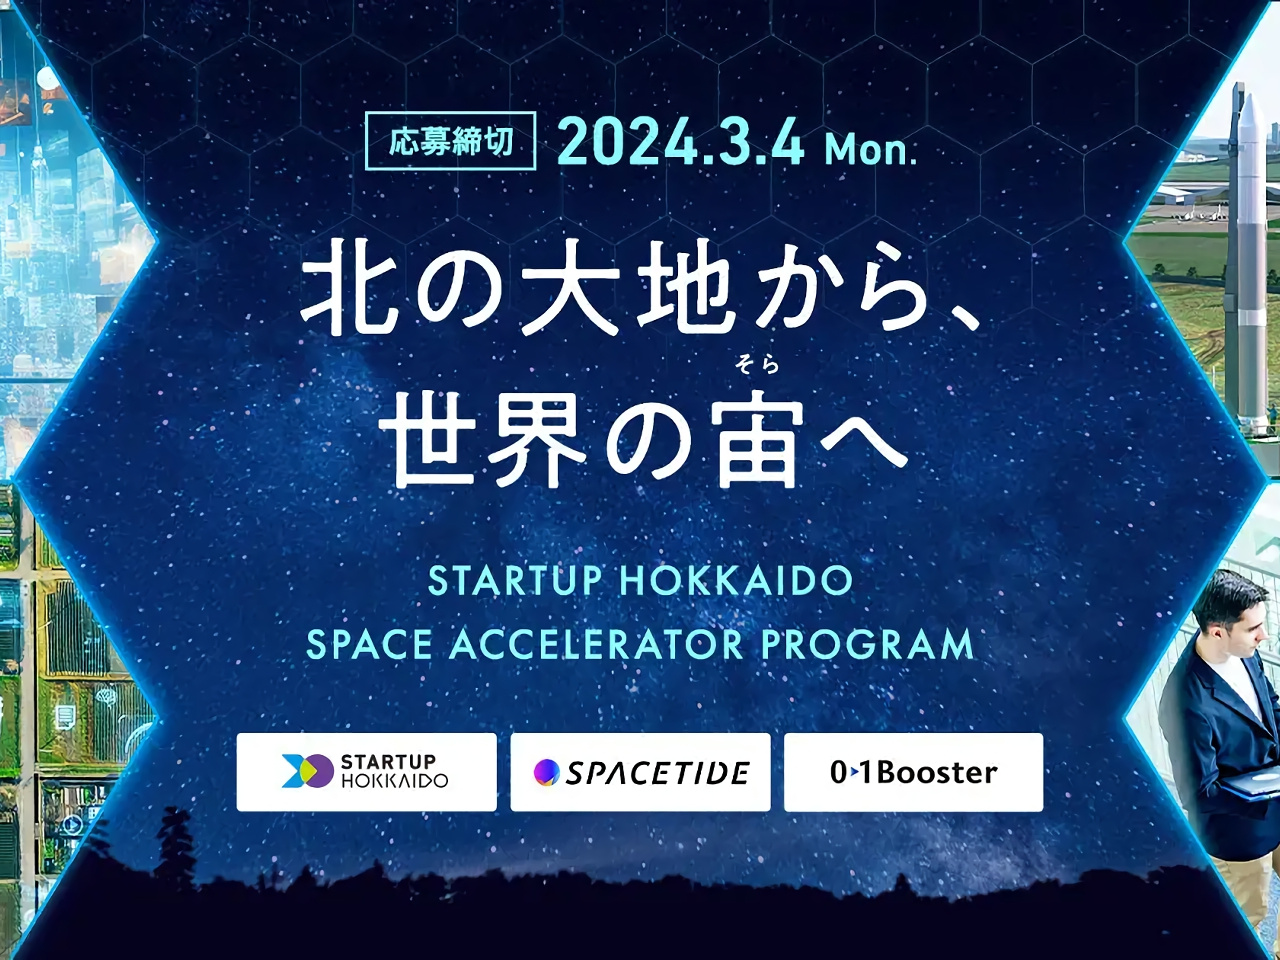 北海道での宇宙産業の起業目指す新興企業を対象にしたアクセラレータープログラム開始